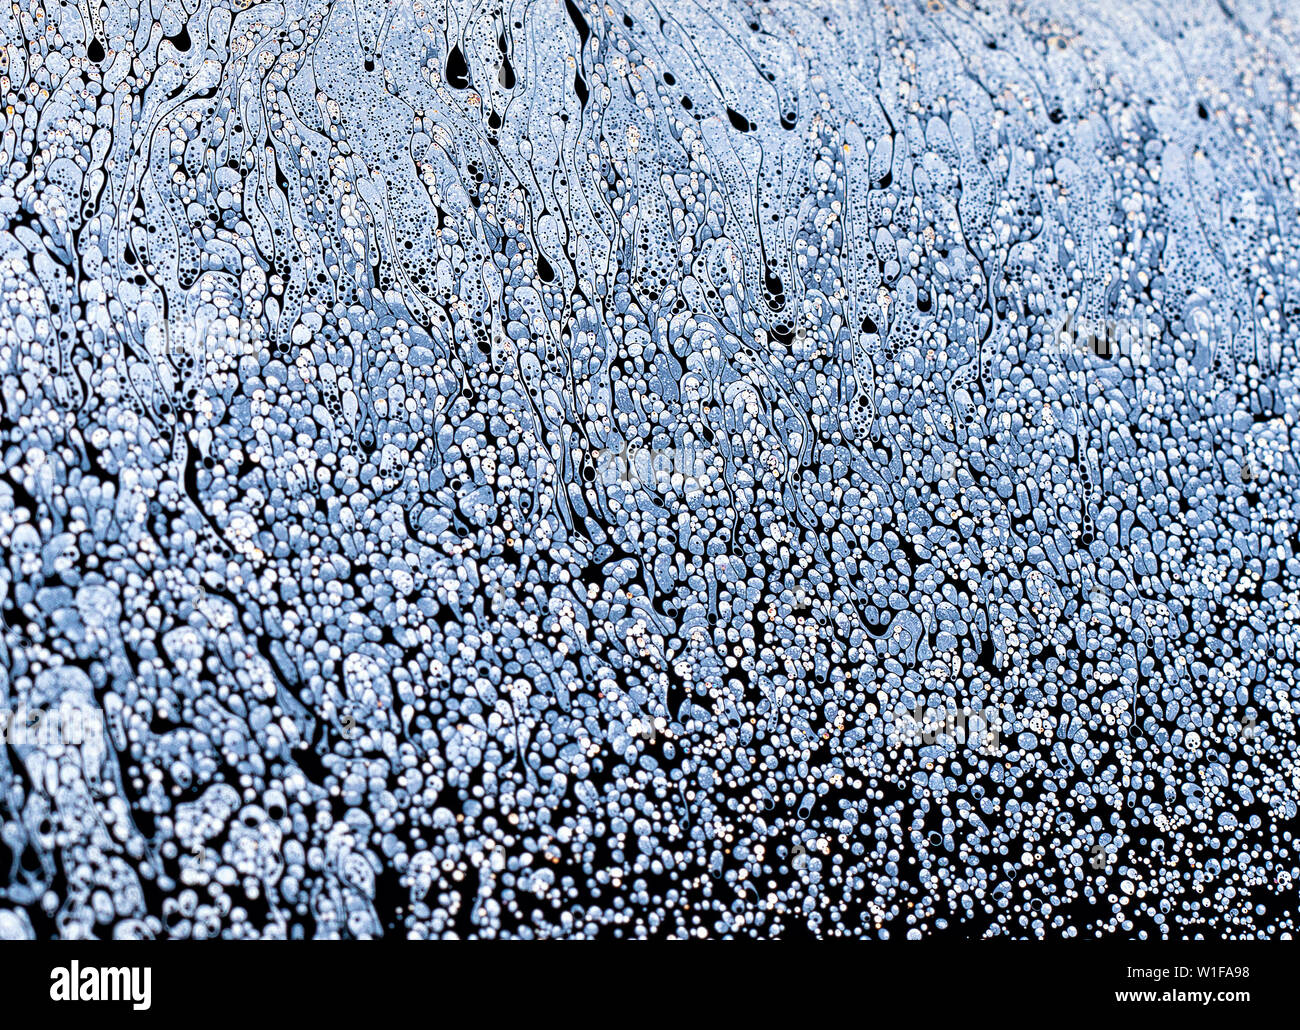 Incredibile fantasia acqua saponata pattern sfondo astratto semicerchio. Modello di spazio o di pianeti universo cosmic. Foto Stock